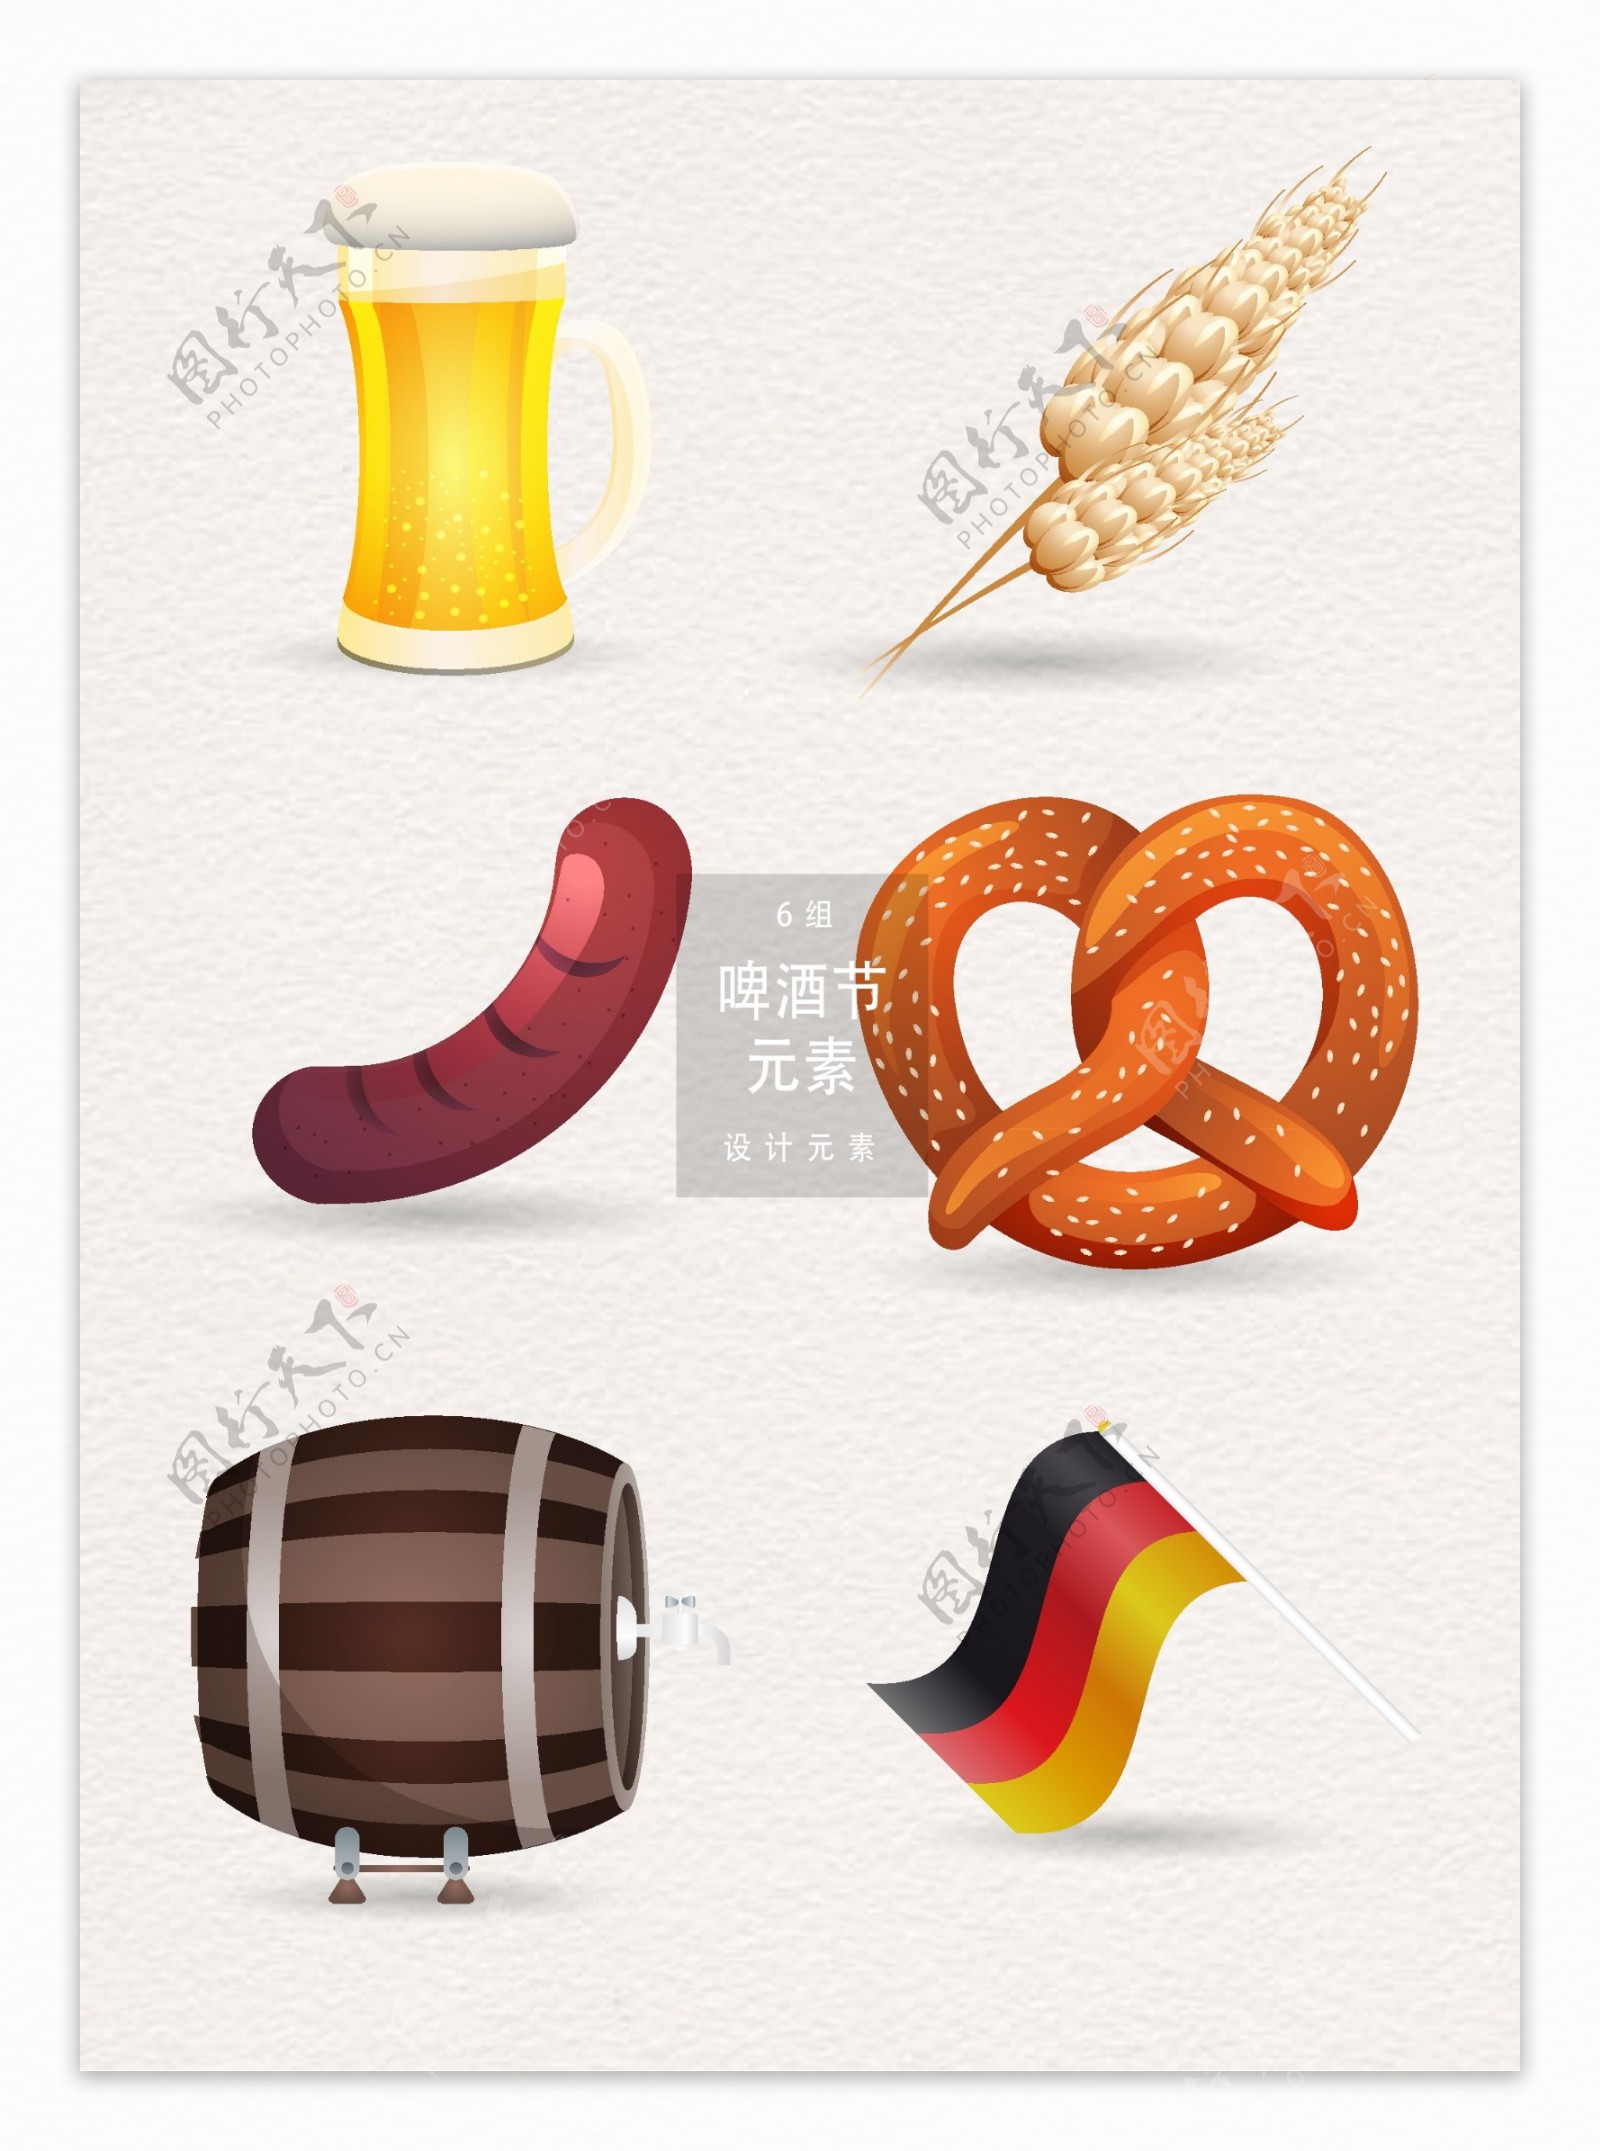 德国啤酒节设计元素